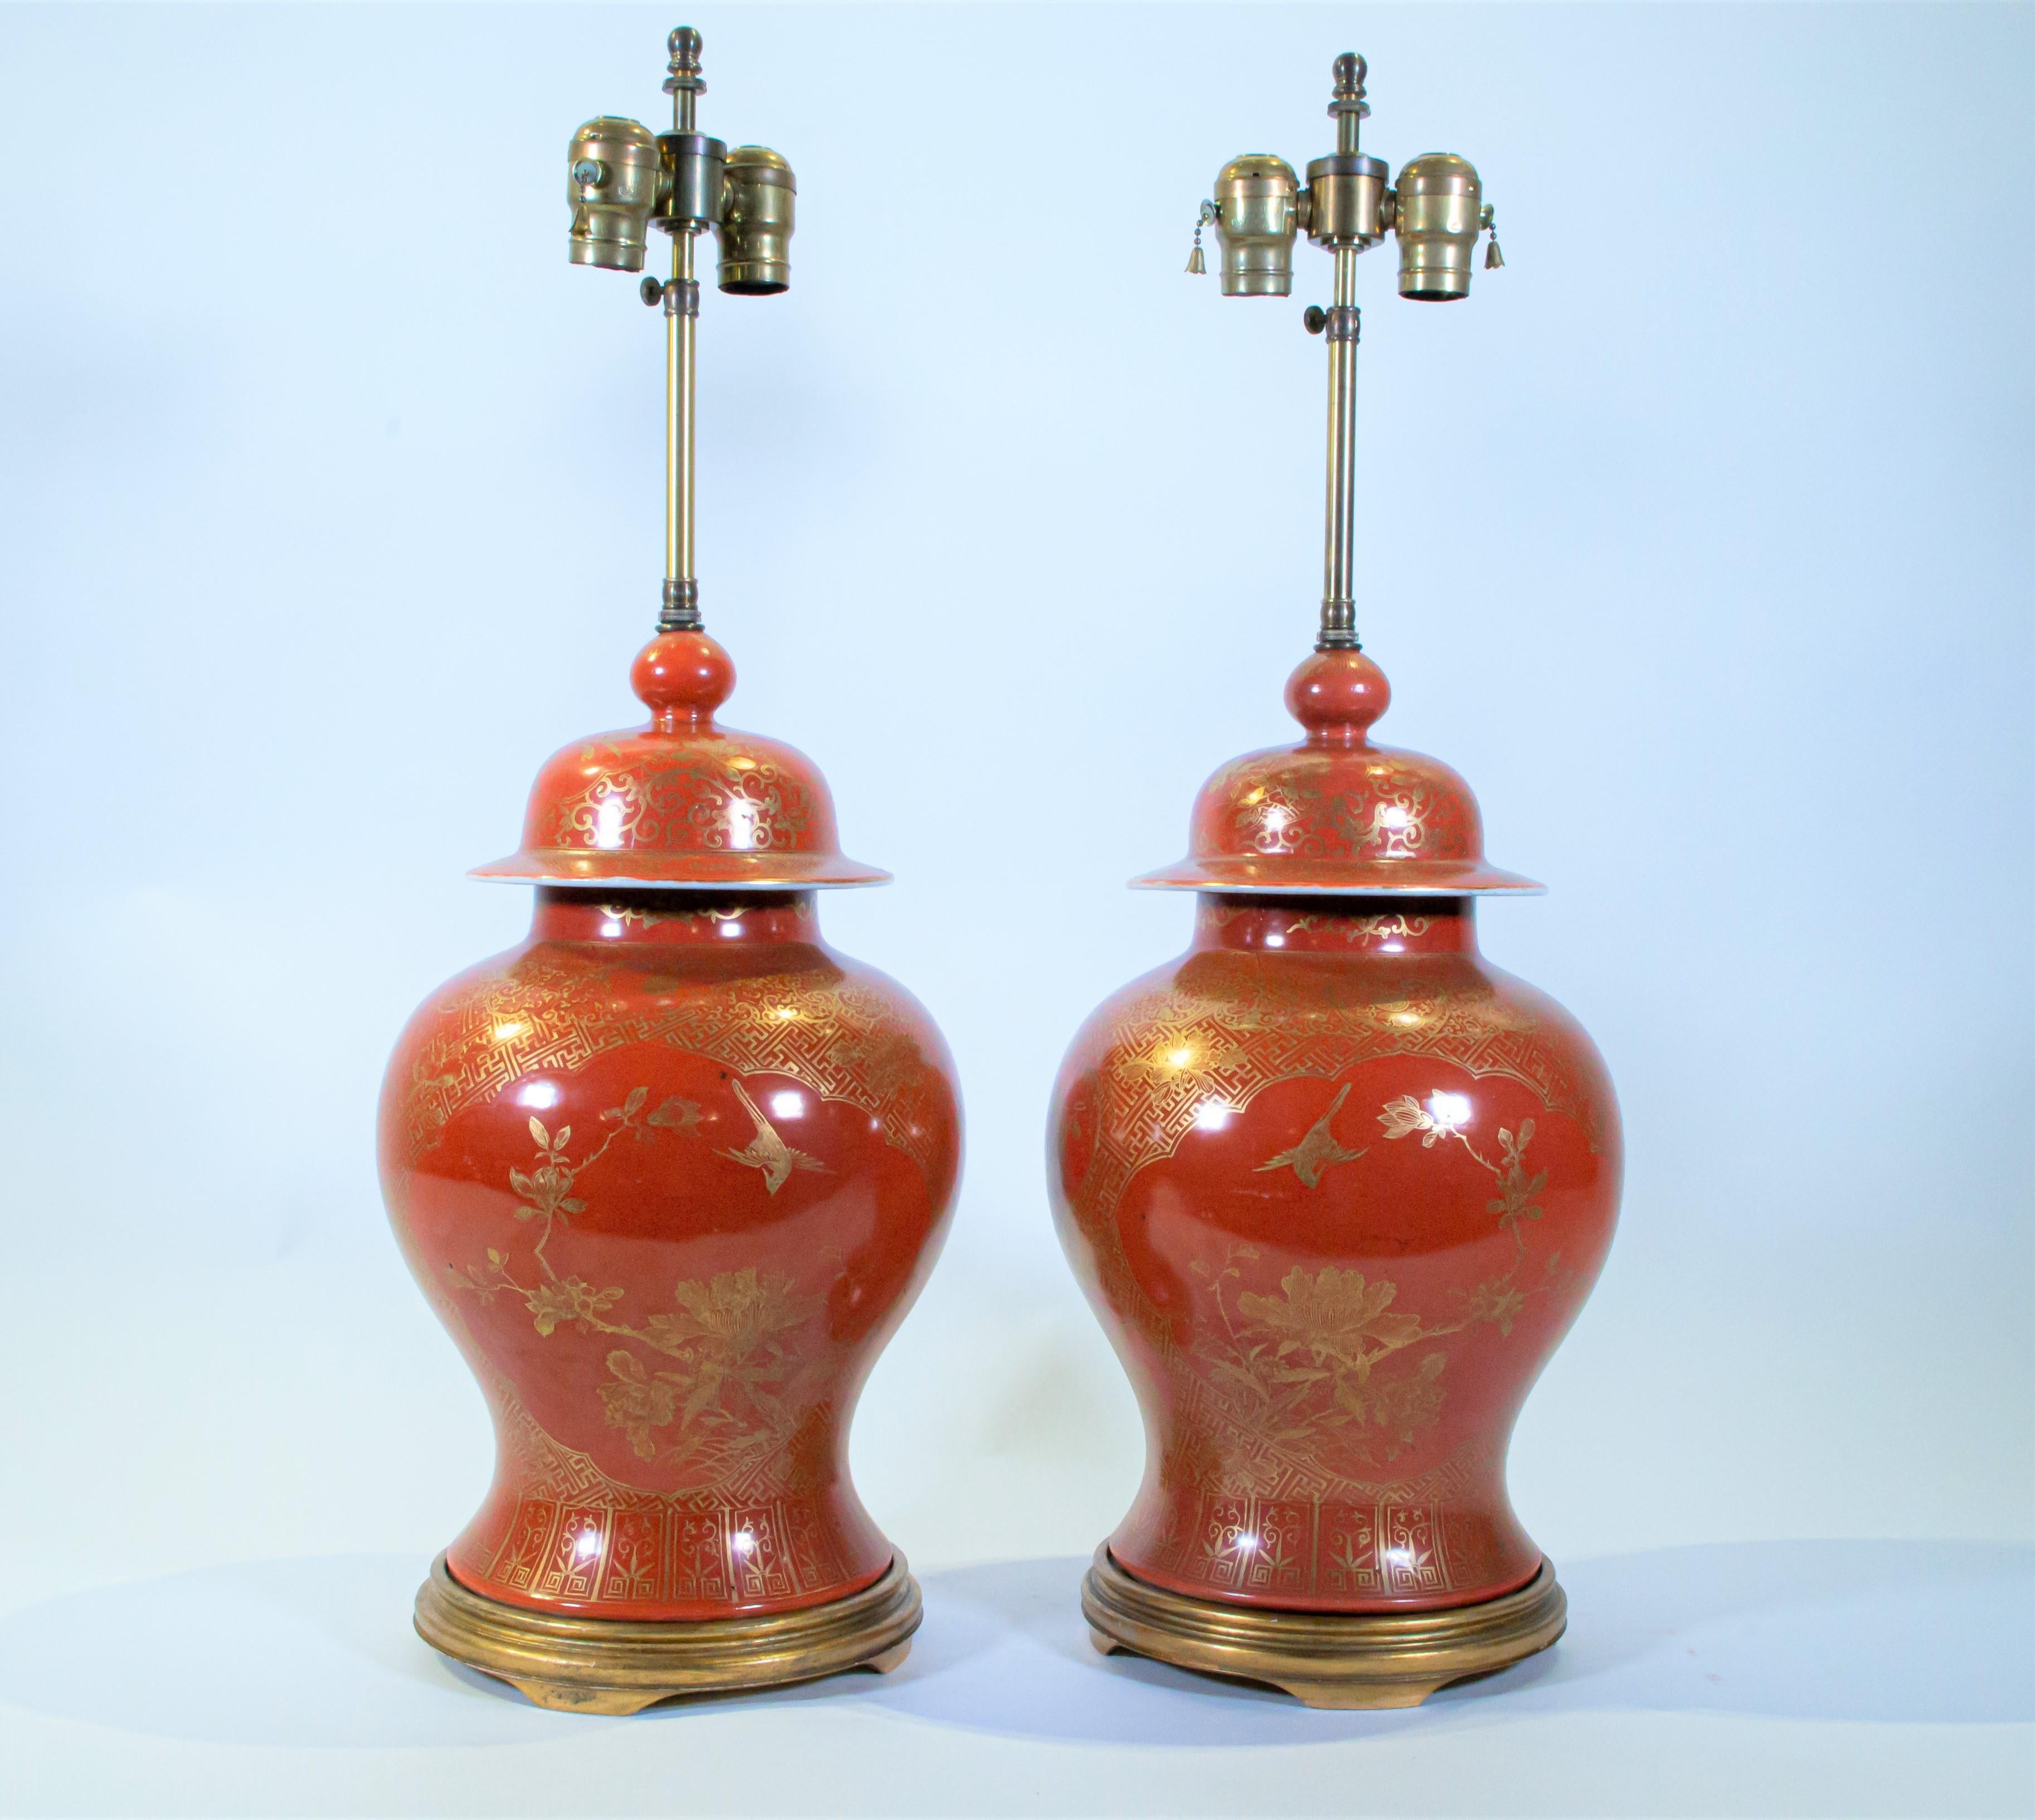 Ein Paar antiker chinesischer Exportvasen des 19. Jahrhunderts mit orangefarbenem Grund und 24-karätiger Vergoldung, die später zu Lampen umfunktioniert wurden. Dies ist ein wirklich schönes Paar von Lampen. Die orange Farbe ist selten in